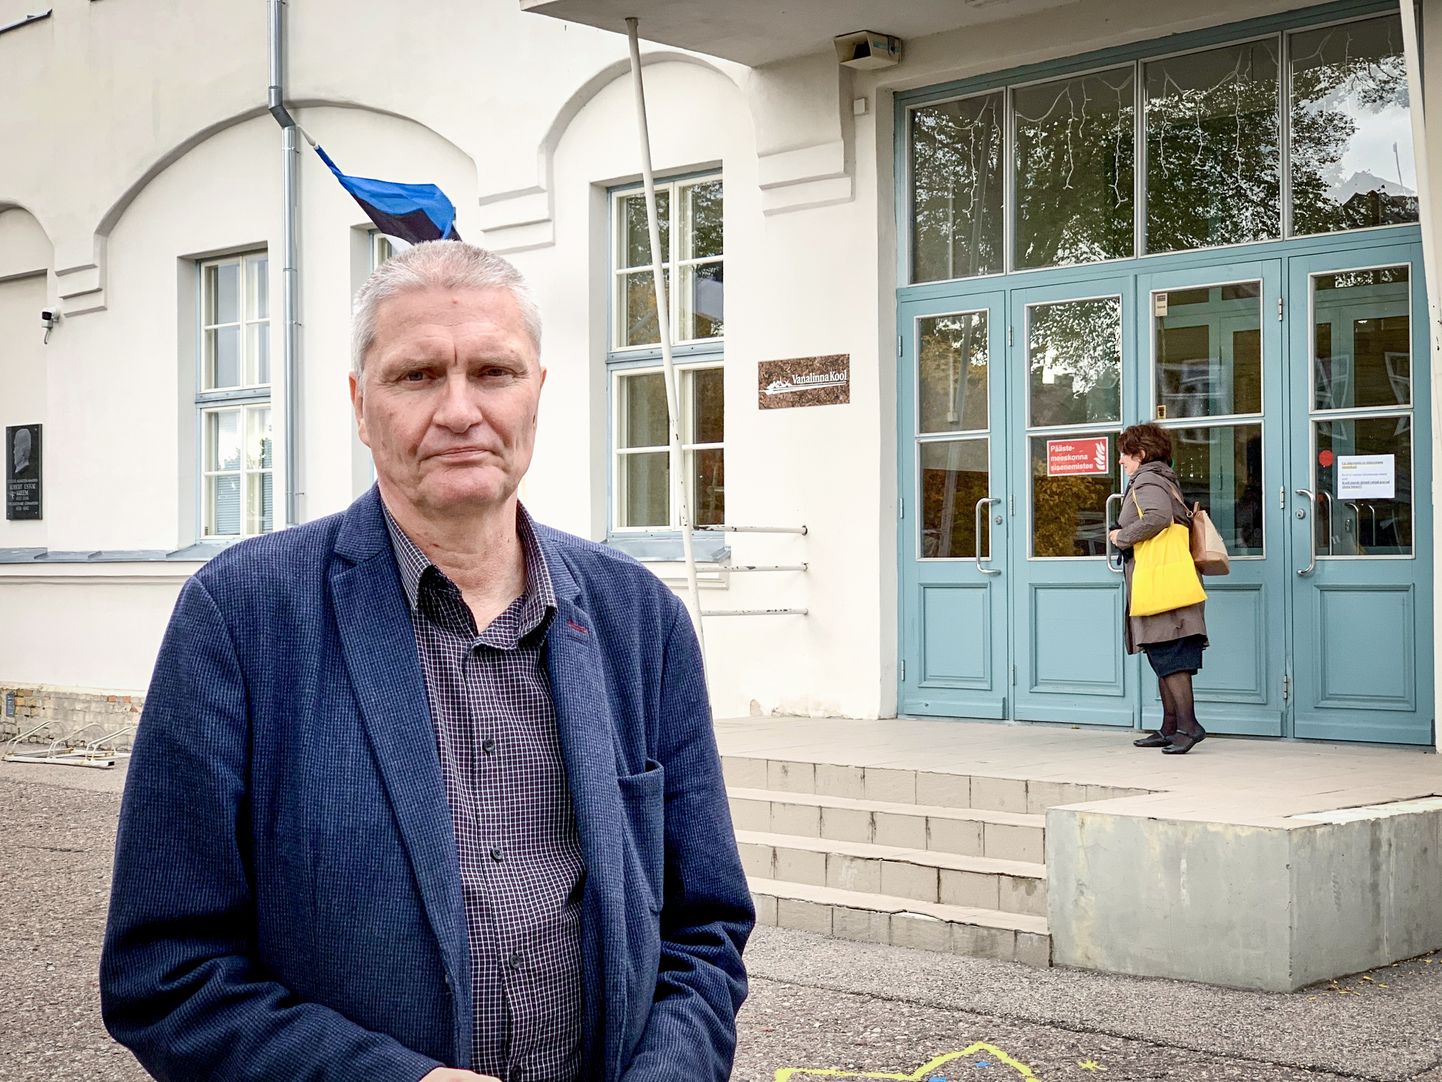 KITSAS JA UMBNE MAJA: Kuressaare Vanalinna kooli direktor Tõnu Erin avaldas lootust, et 2021. aasta sügisel saab koolipere uut õppeaastat alustada lahedamates tingimustes.